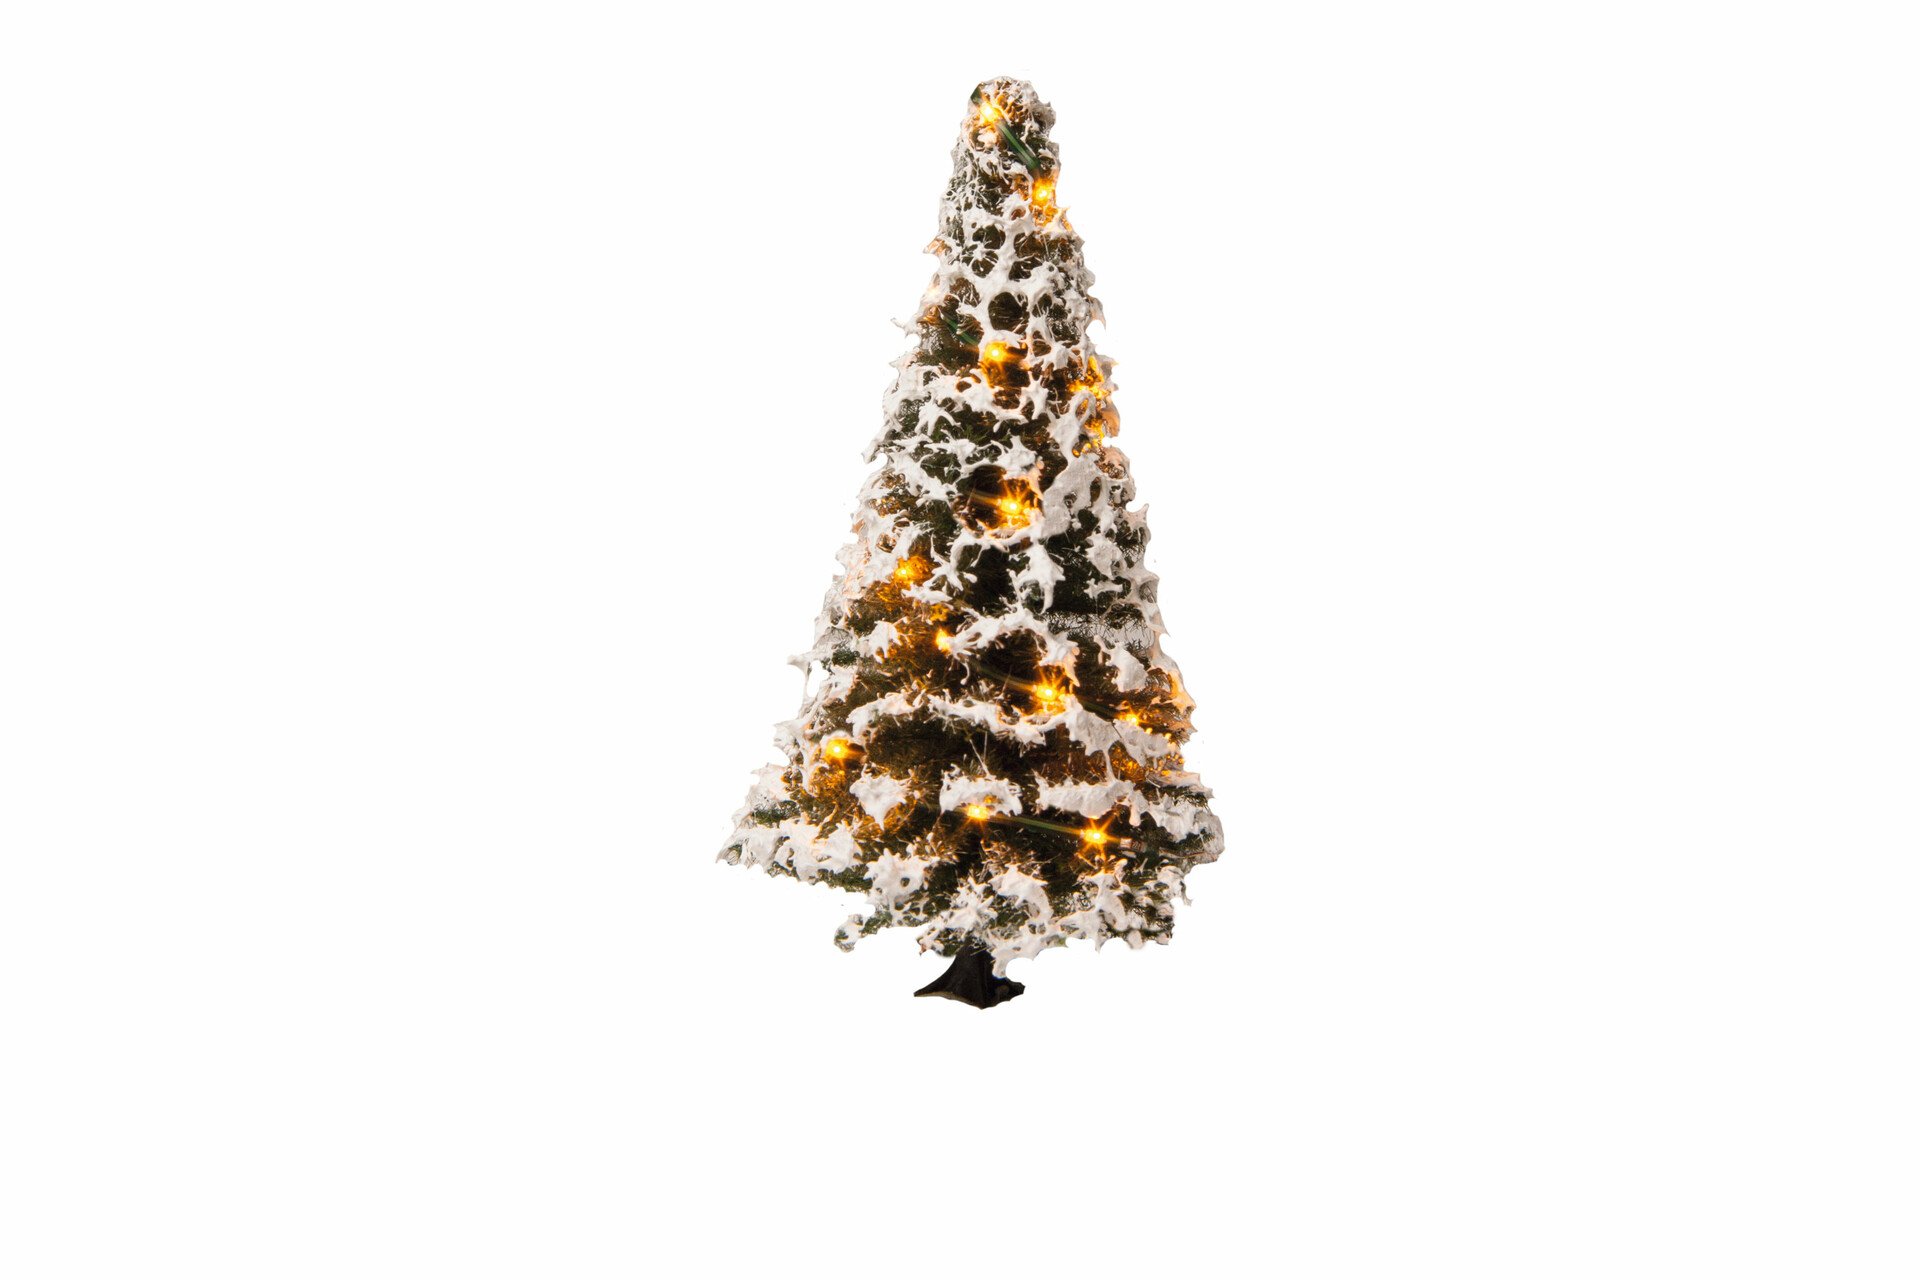 Beleuchteter Weihnachtsbaum mit 20 LEDs, verschneit, 8 cm hoch